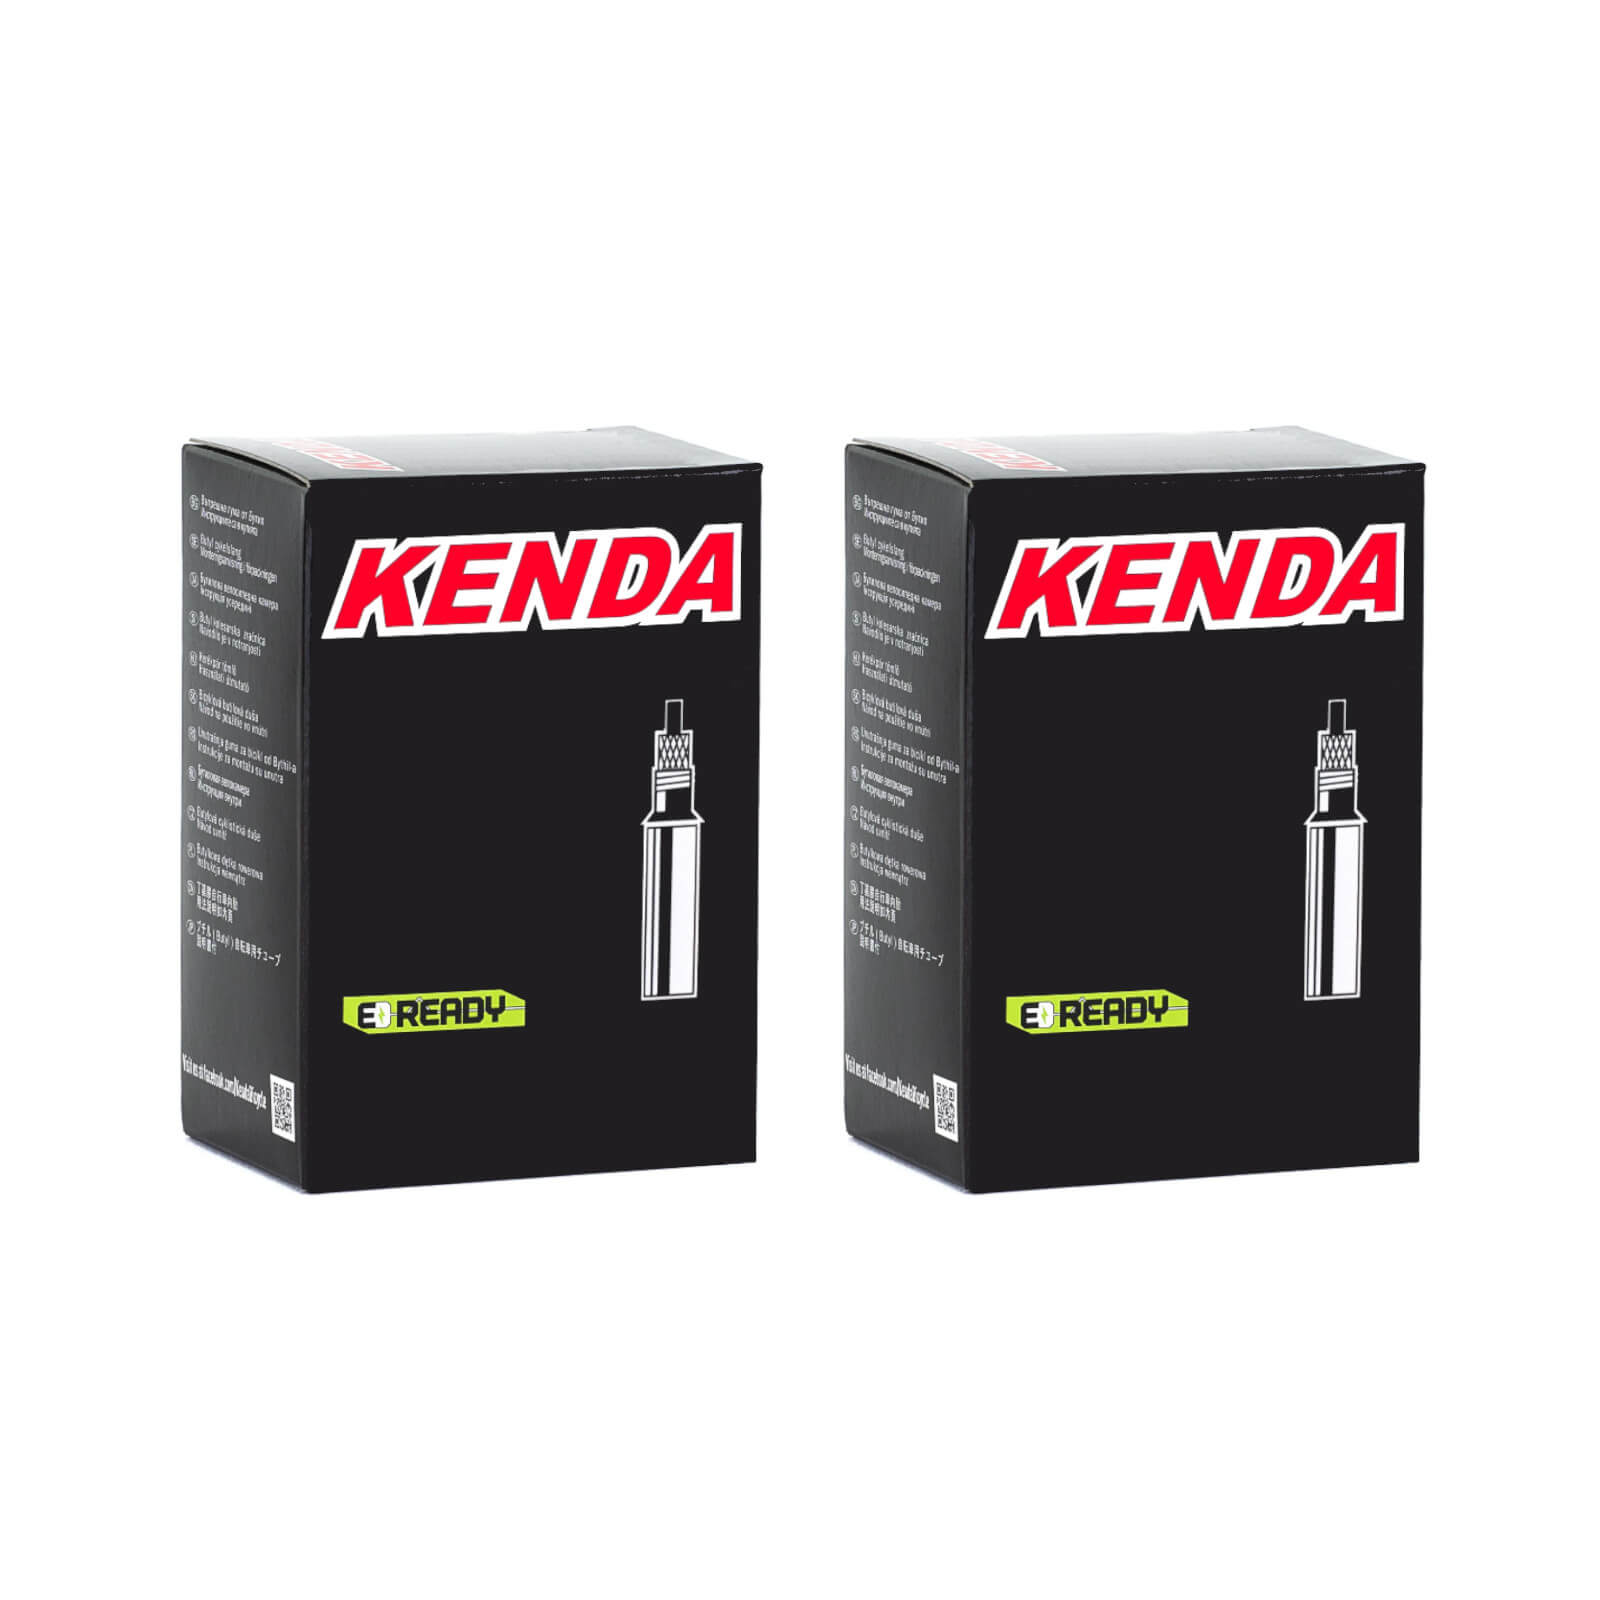 Kenda 700x28-35c Removable Core 60mm 700c Presta Valve Bike Inner Tube Pack of 2